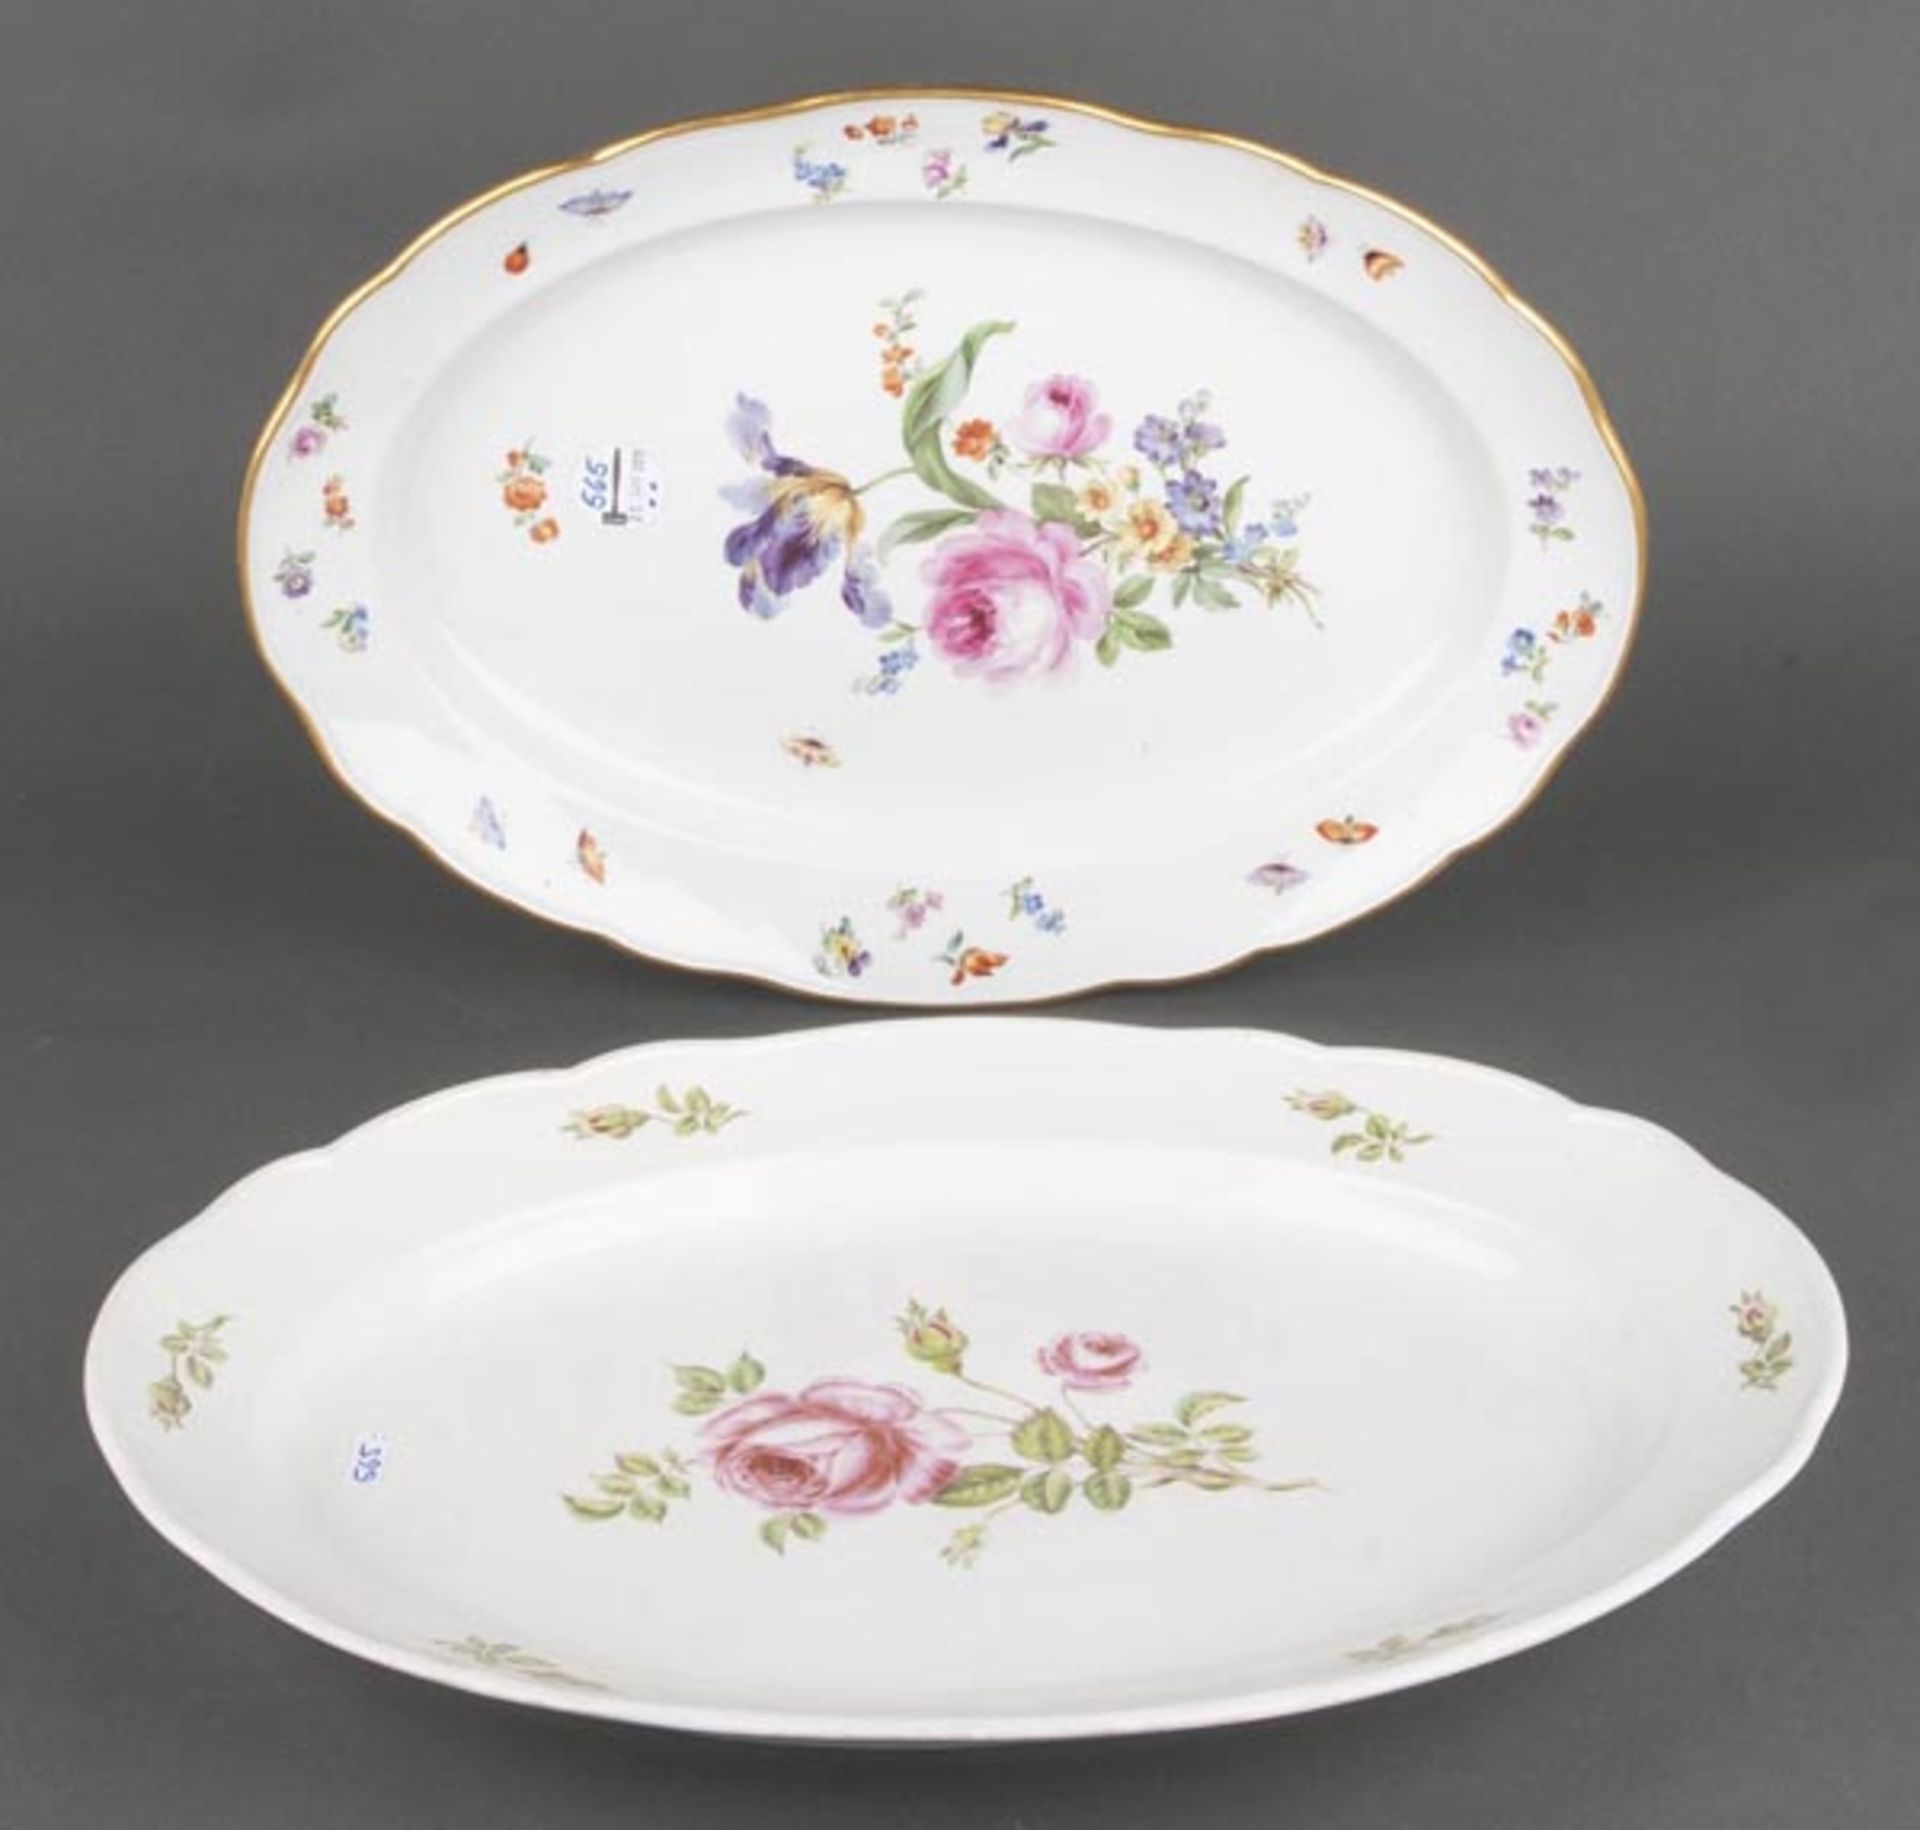 Zwei ovale Platten. Meissen 19. Jh. Porzellan, bunt bemalt Blumenbouquet, umgeben von Streublumen